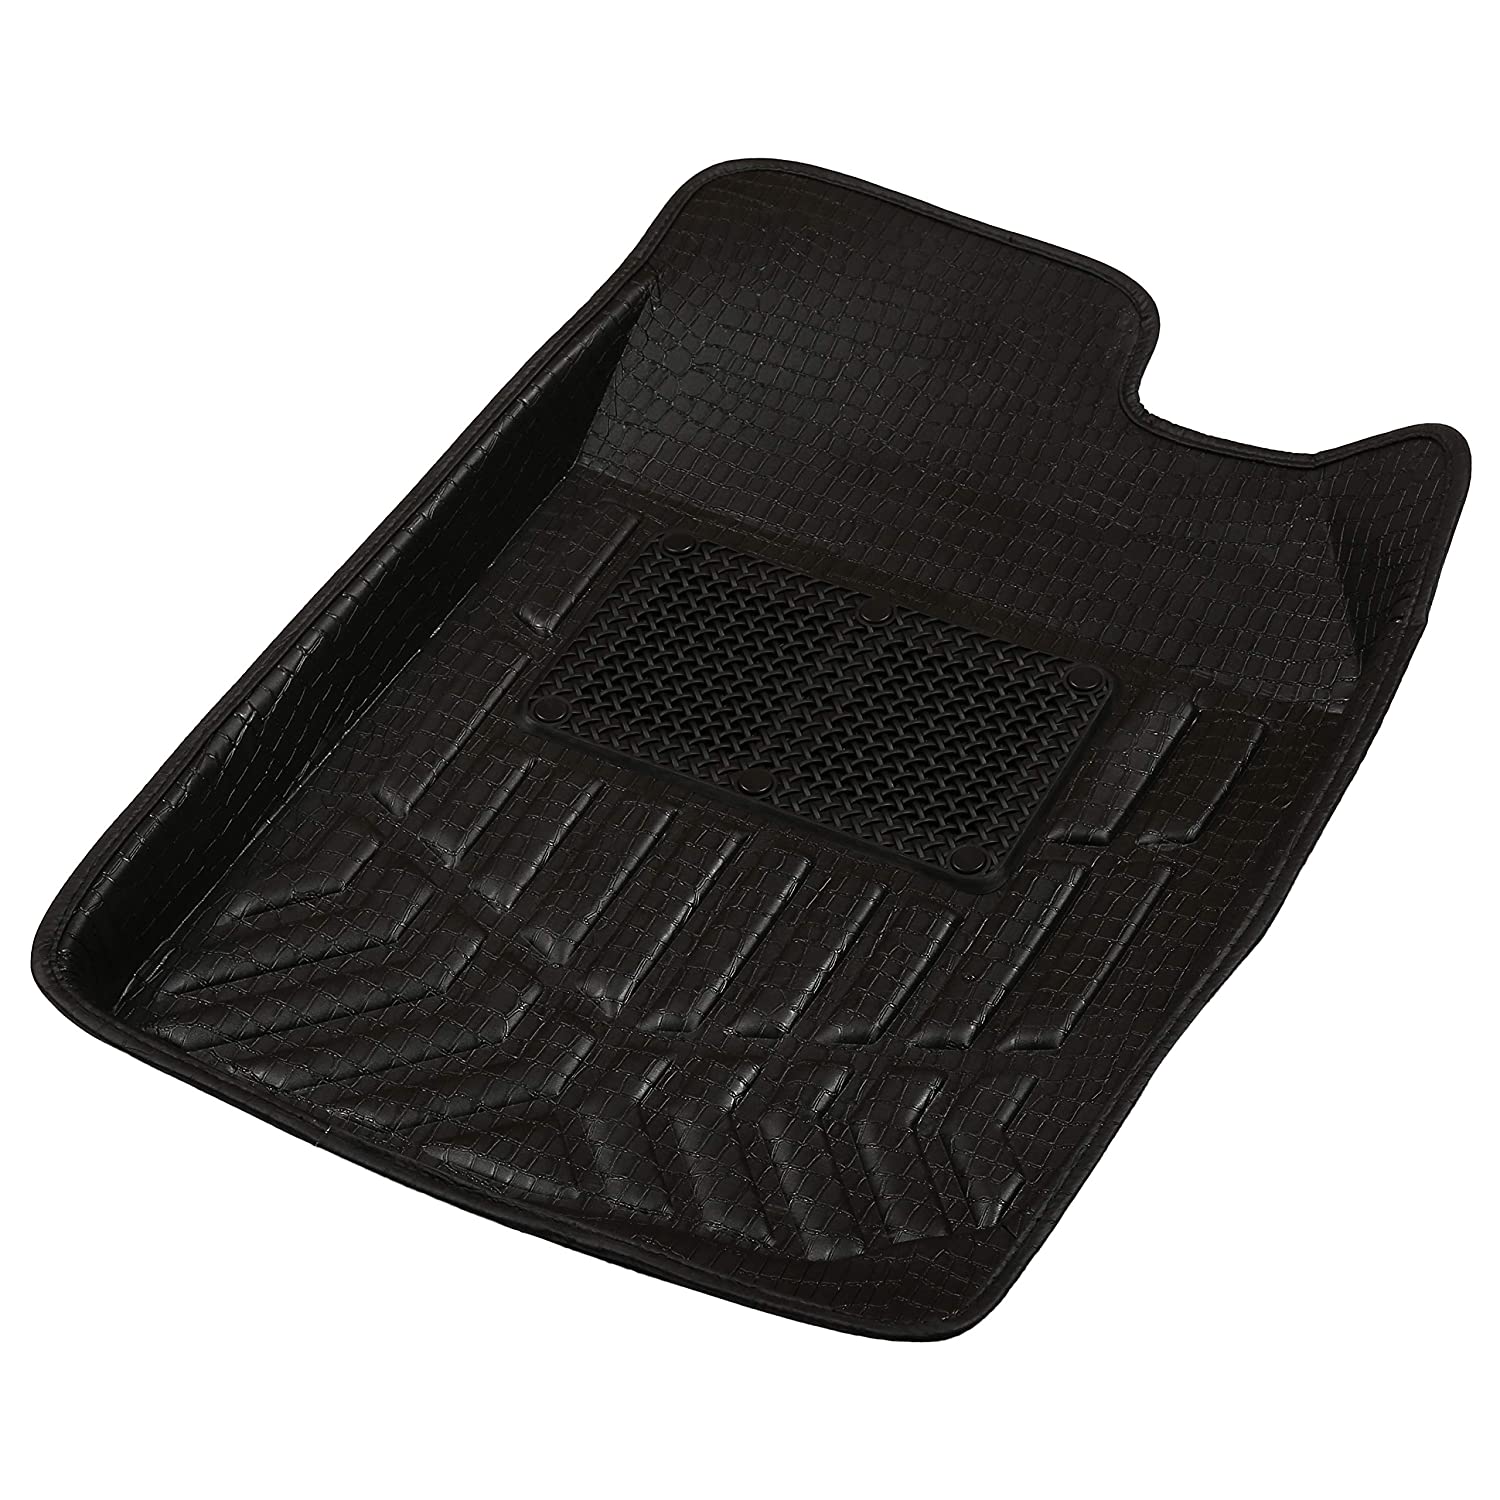 Drivn 3D Customised Car Floor Mat for Ford Figo - Black (Set of 3)